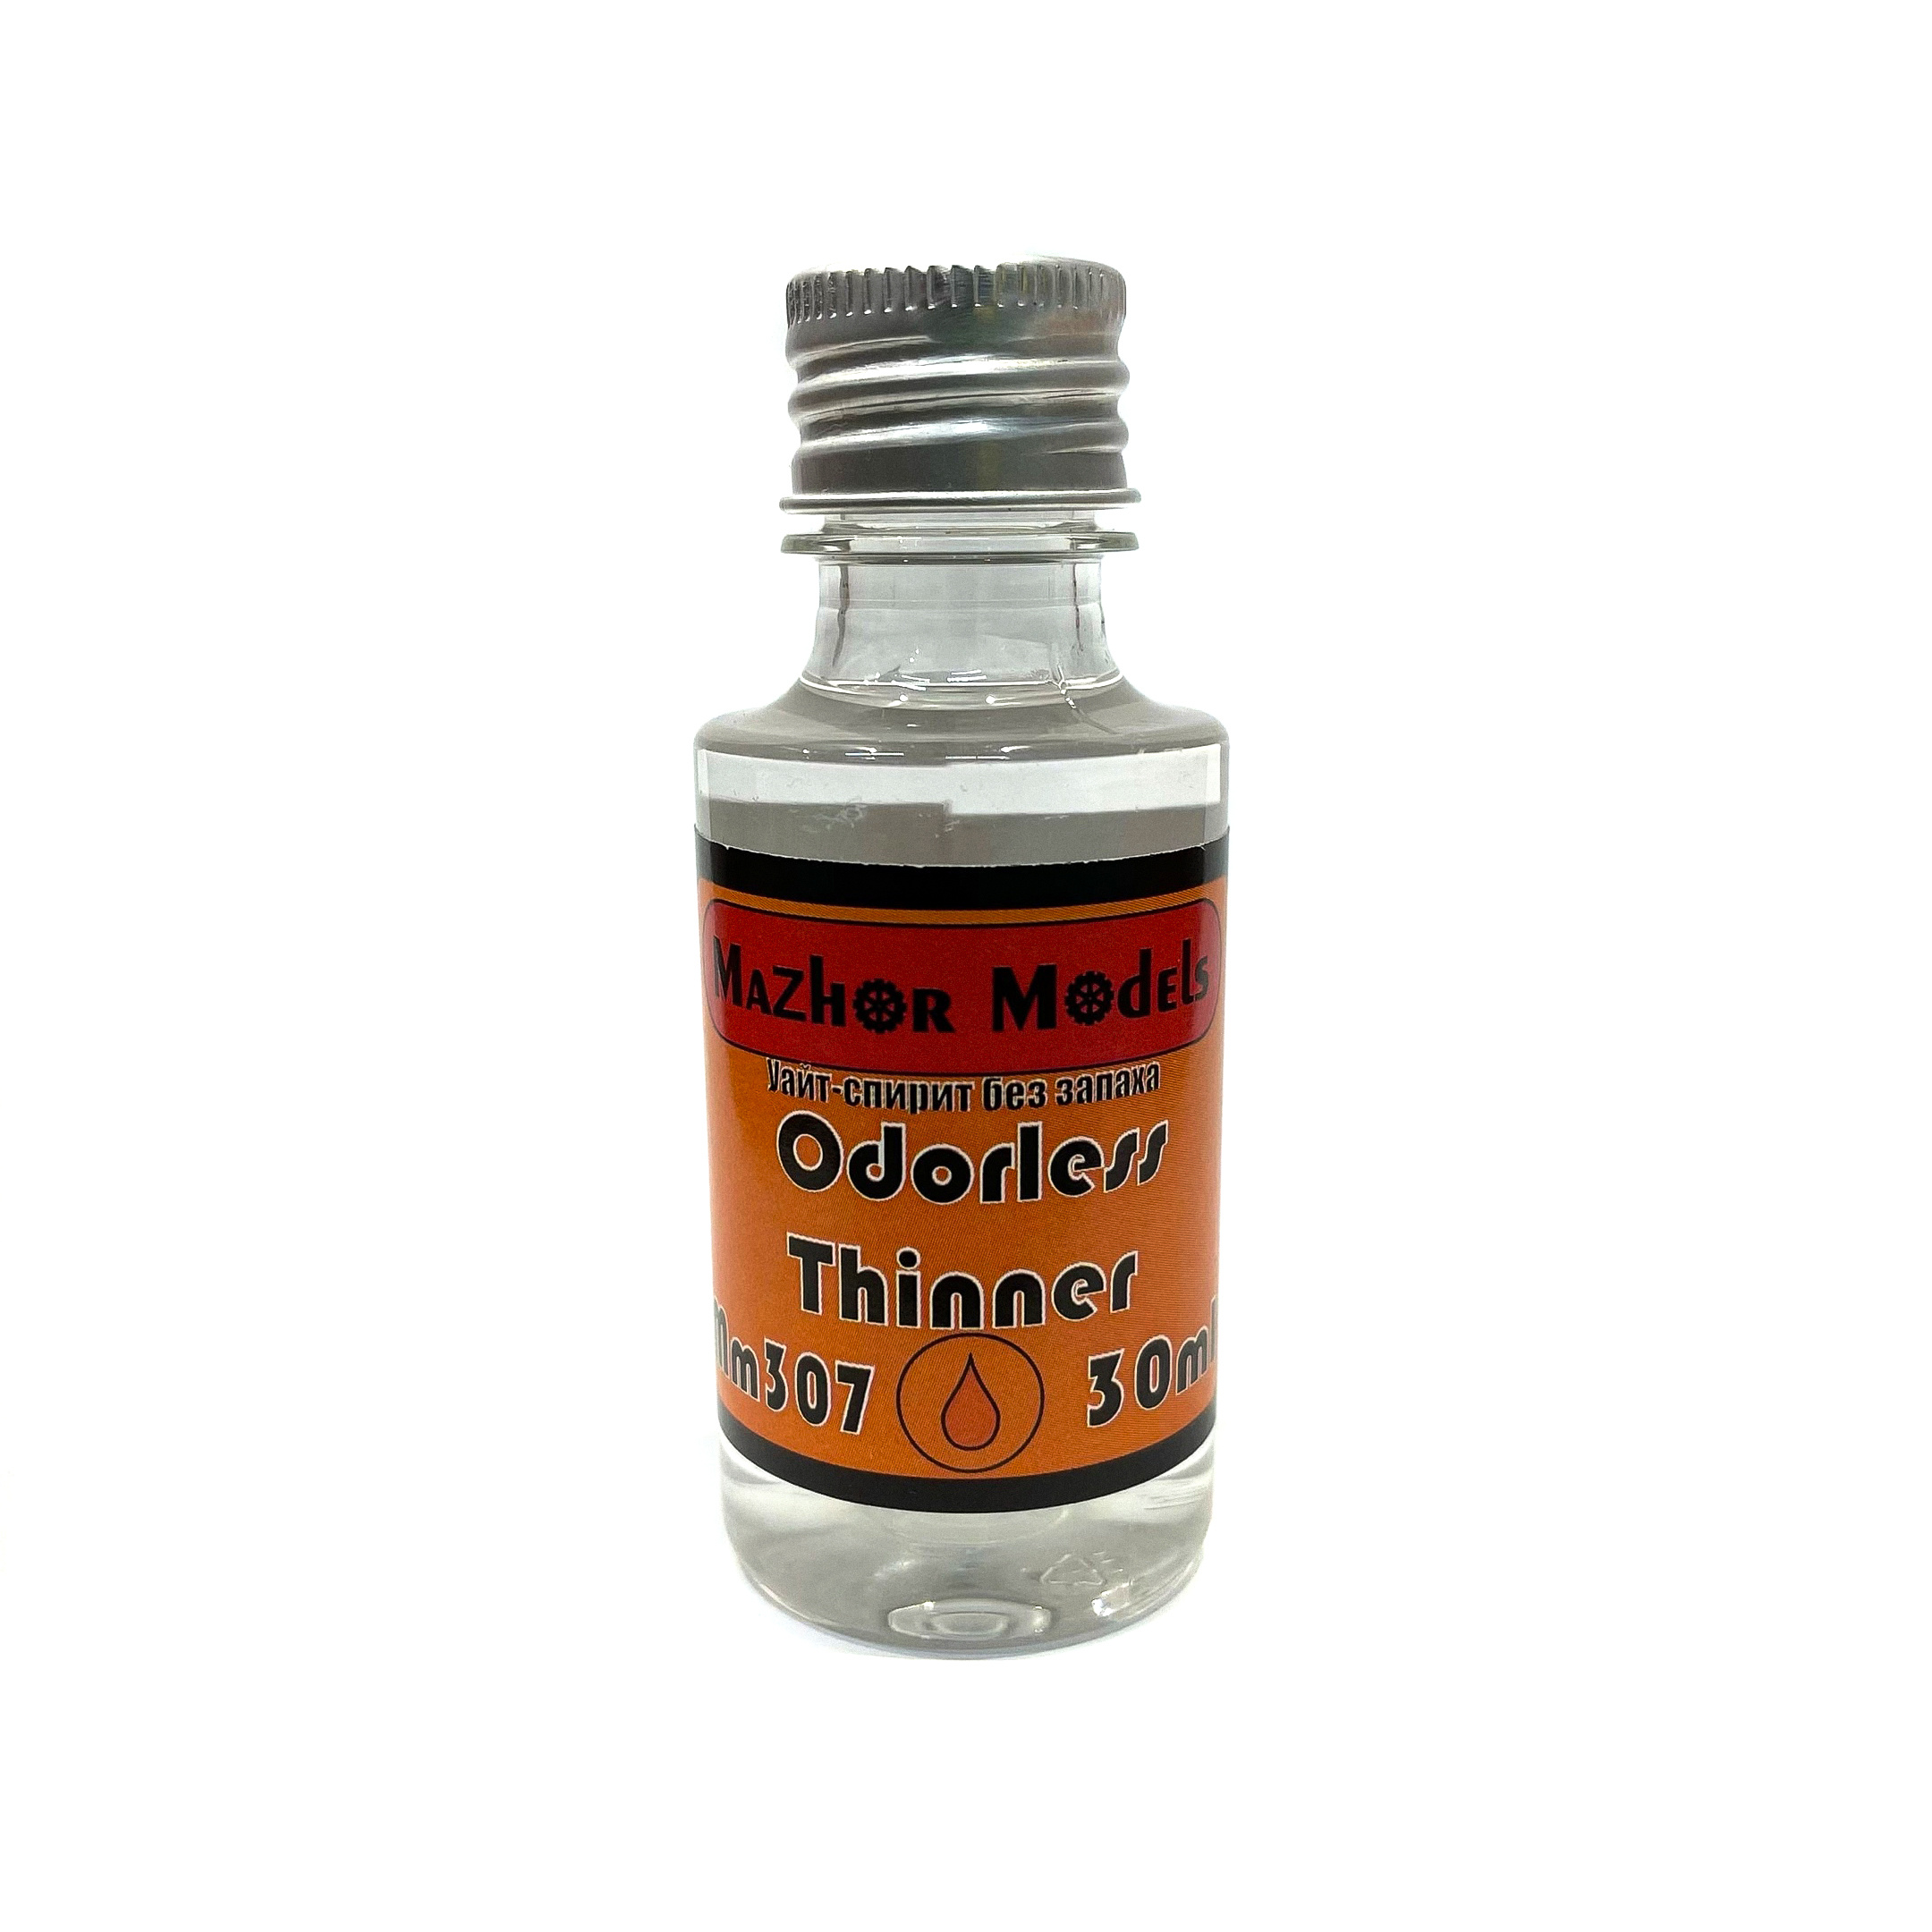 MM307 Major Models White Spirit Odorless, 30 ml